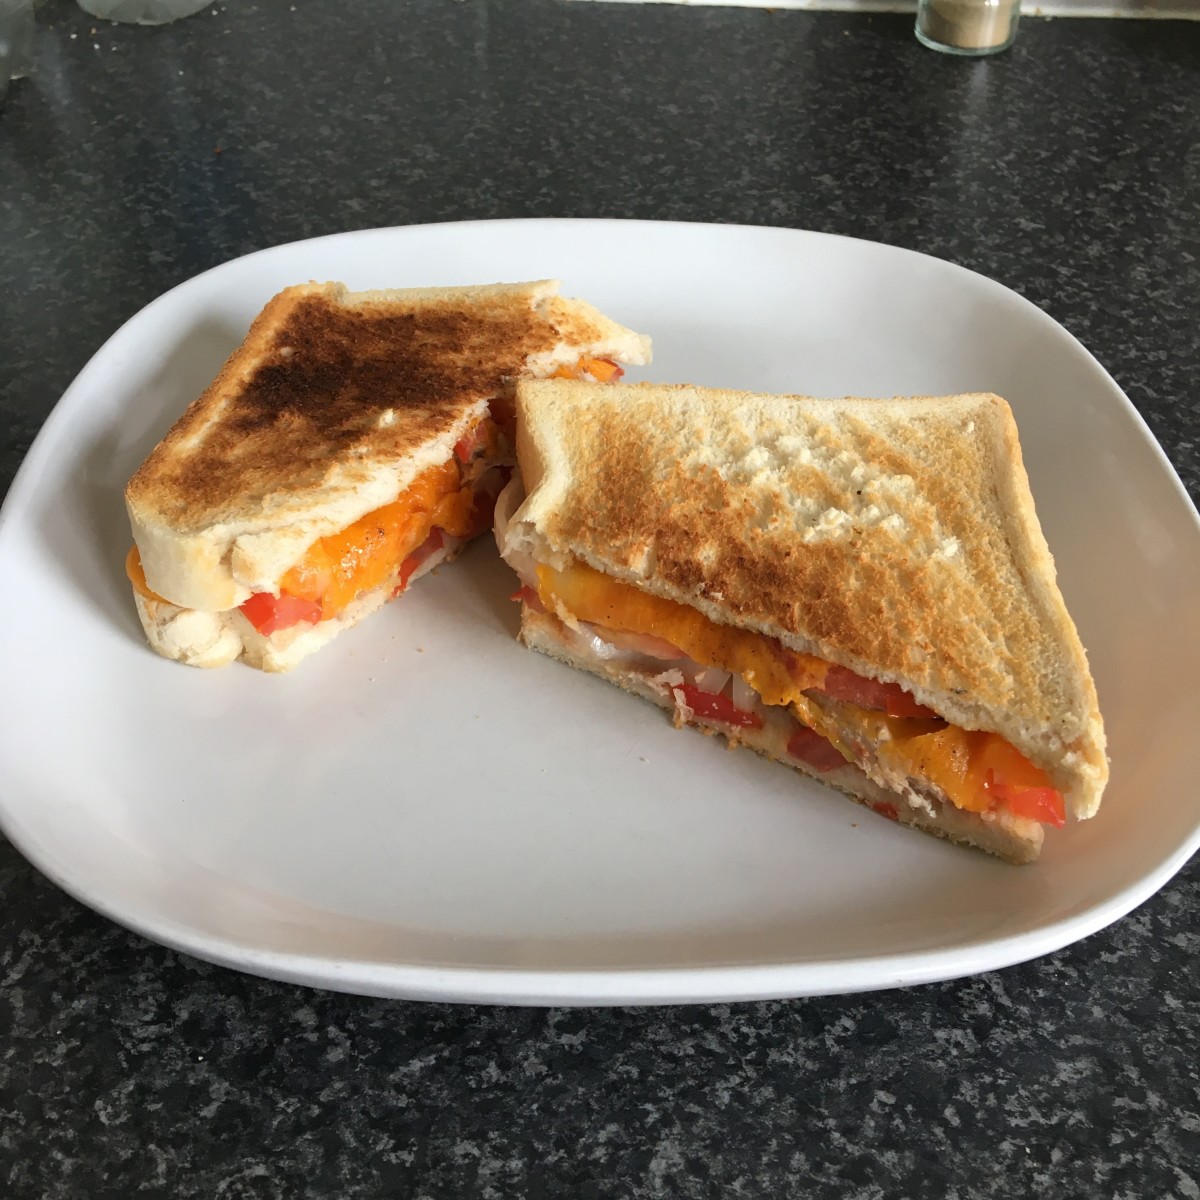 Pheasant, cheese, tomato and onion toastie